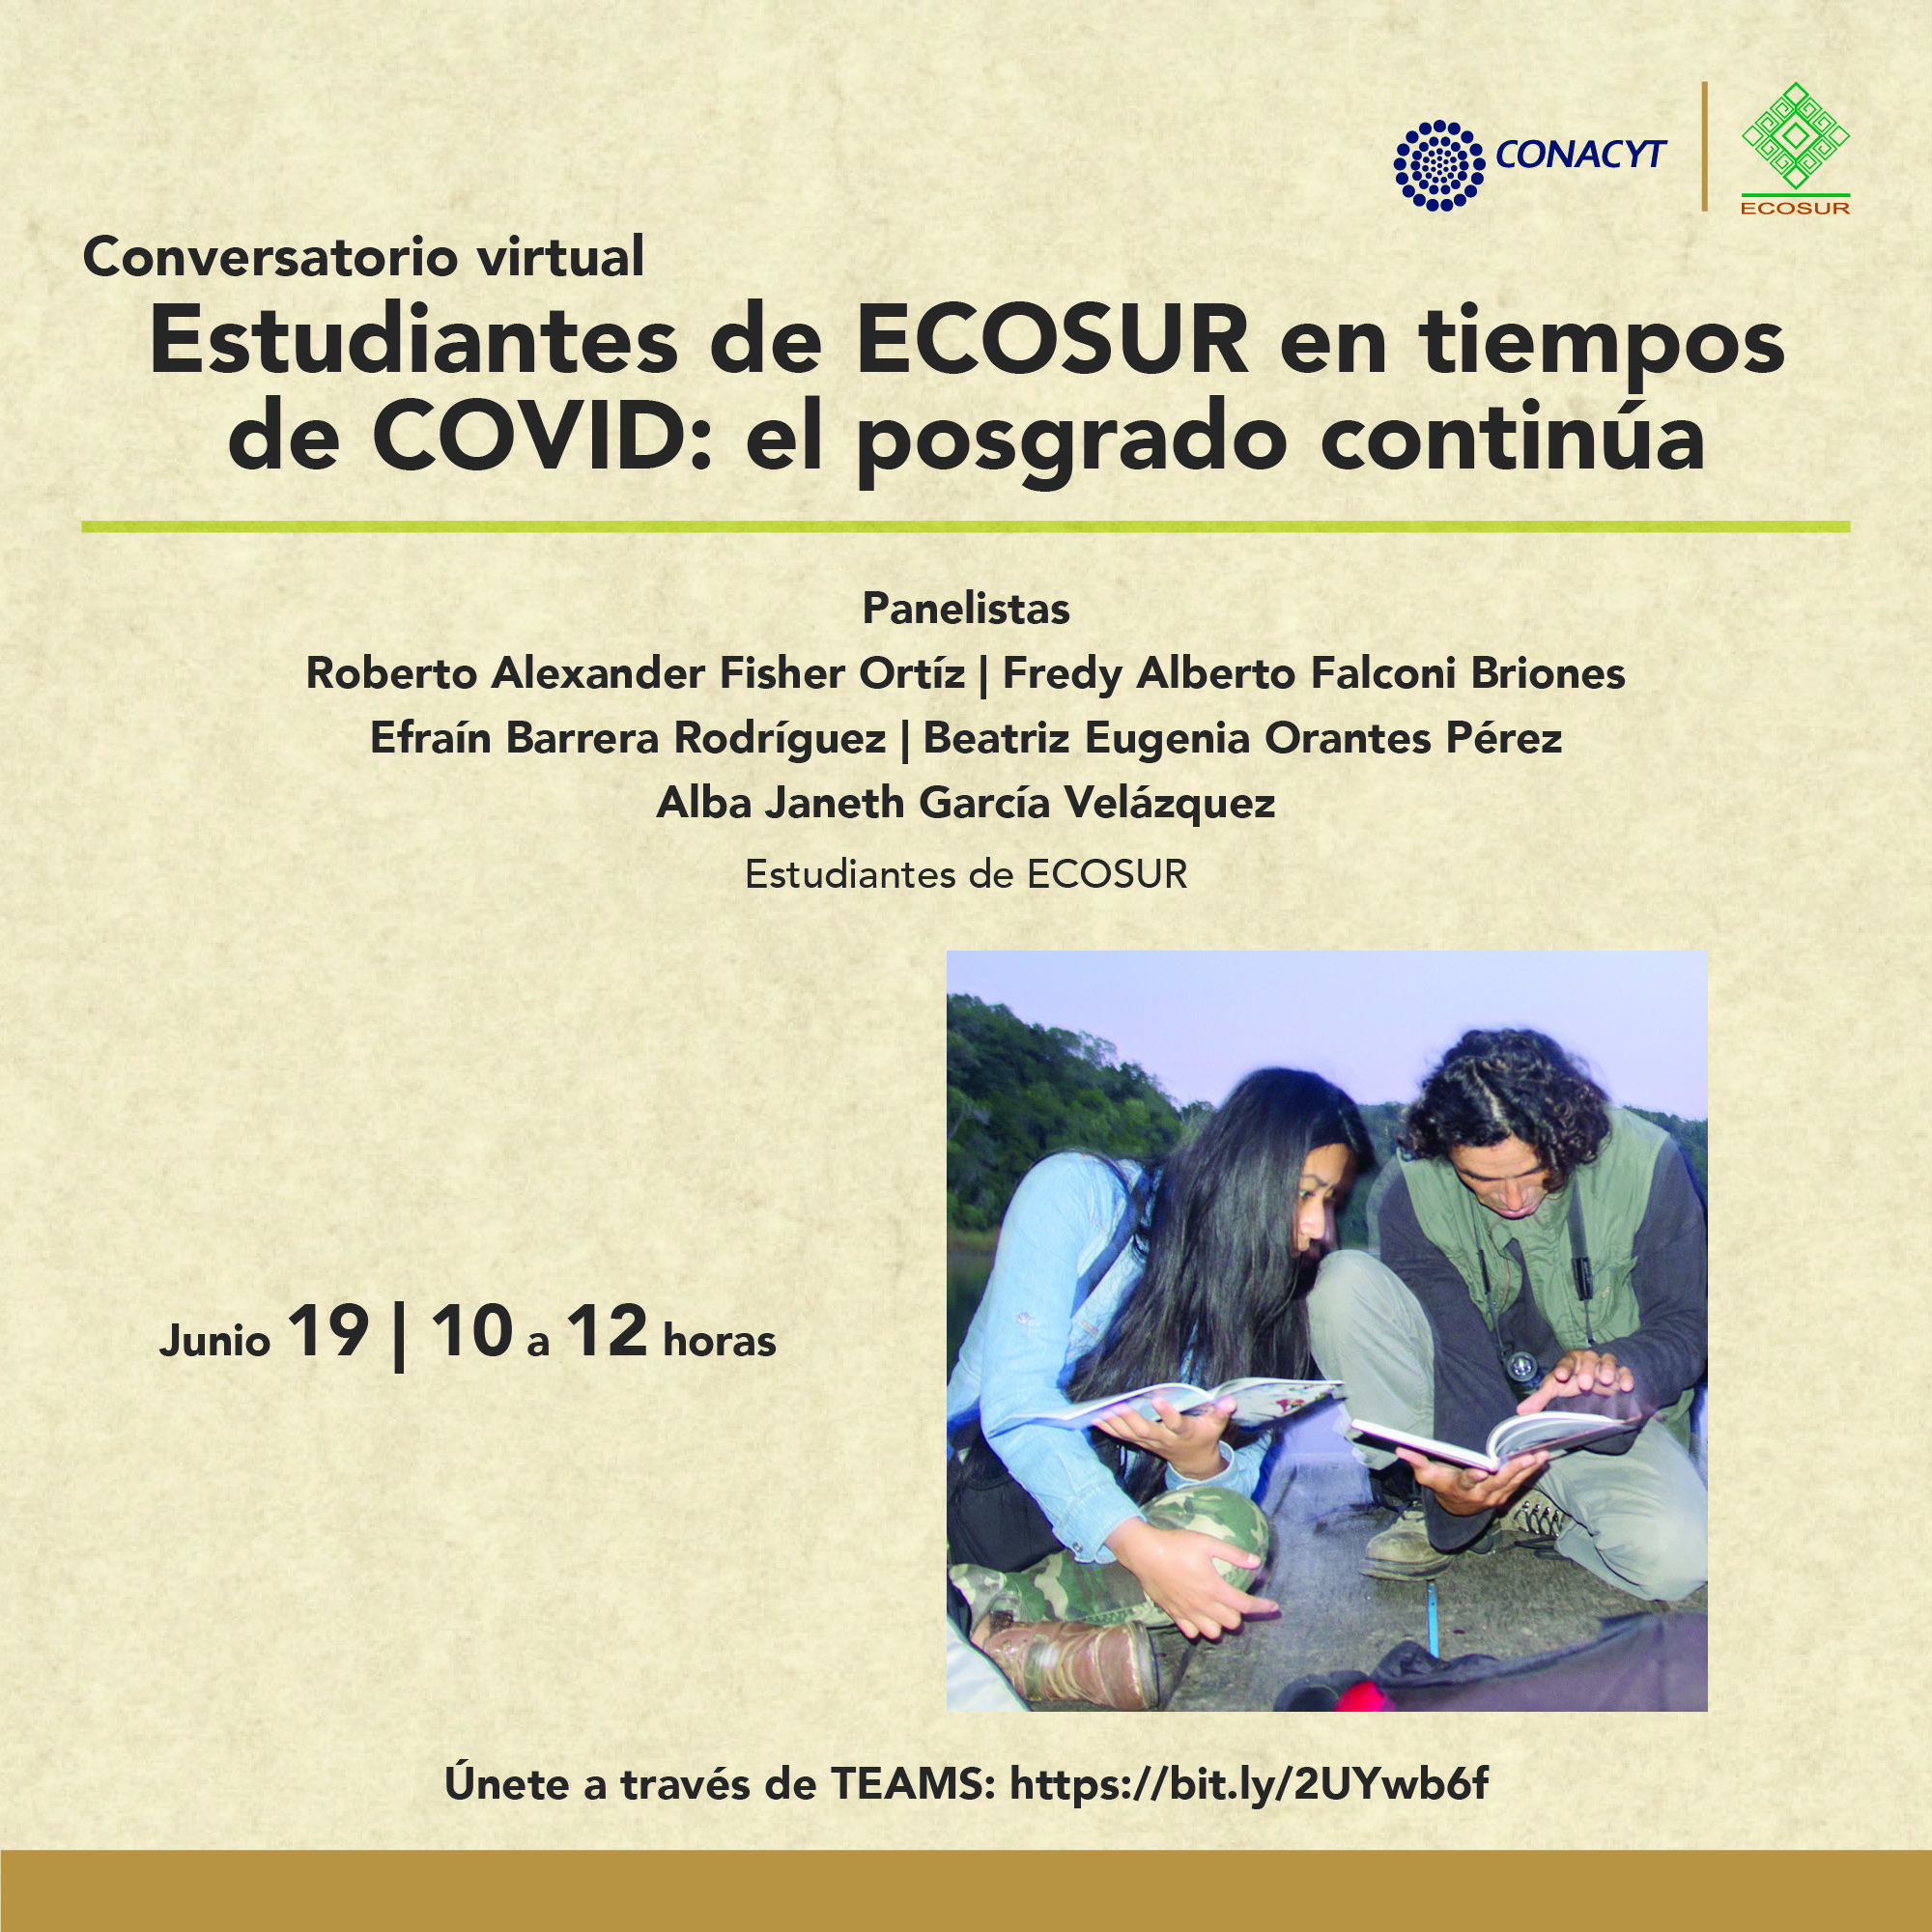 Conversatorio virtual “Estudiantes de ECOSUR en tiempos de COVID: el posgrado continúa”